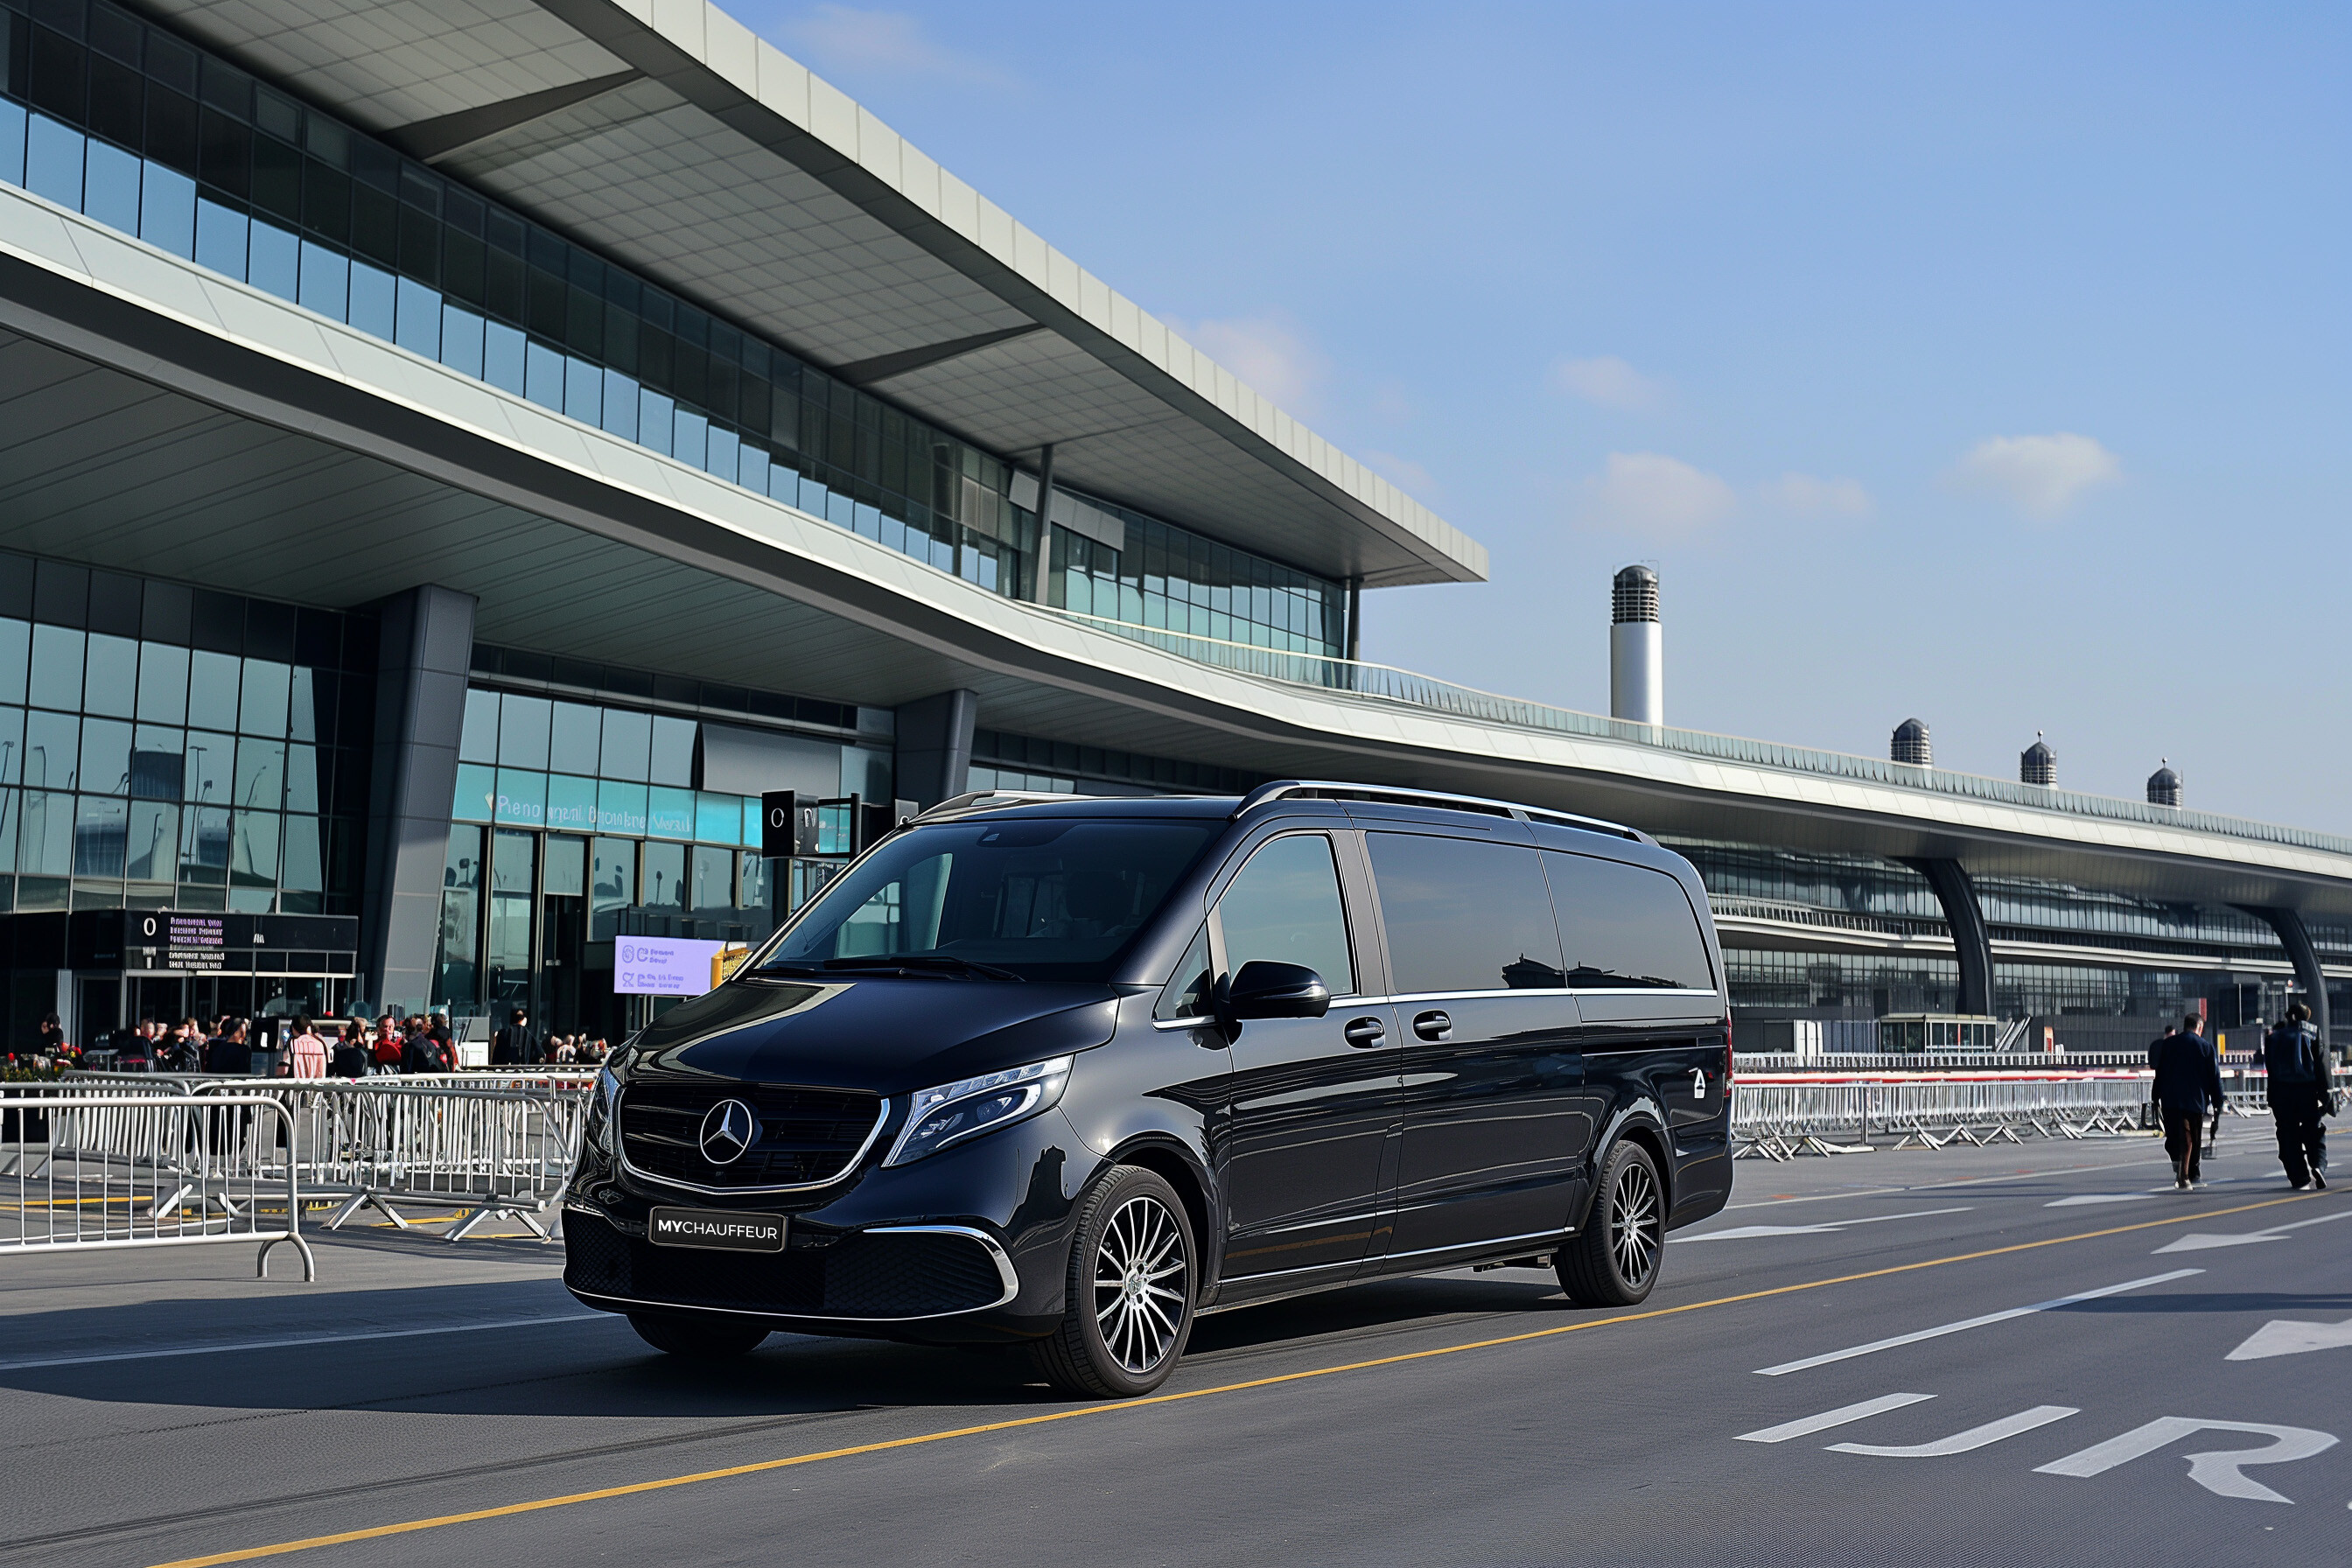 Flughafenshuttle Istanbul - Mit einer erstklassigen luxuriösen Maybach-Limousine